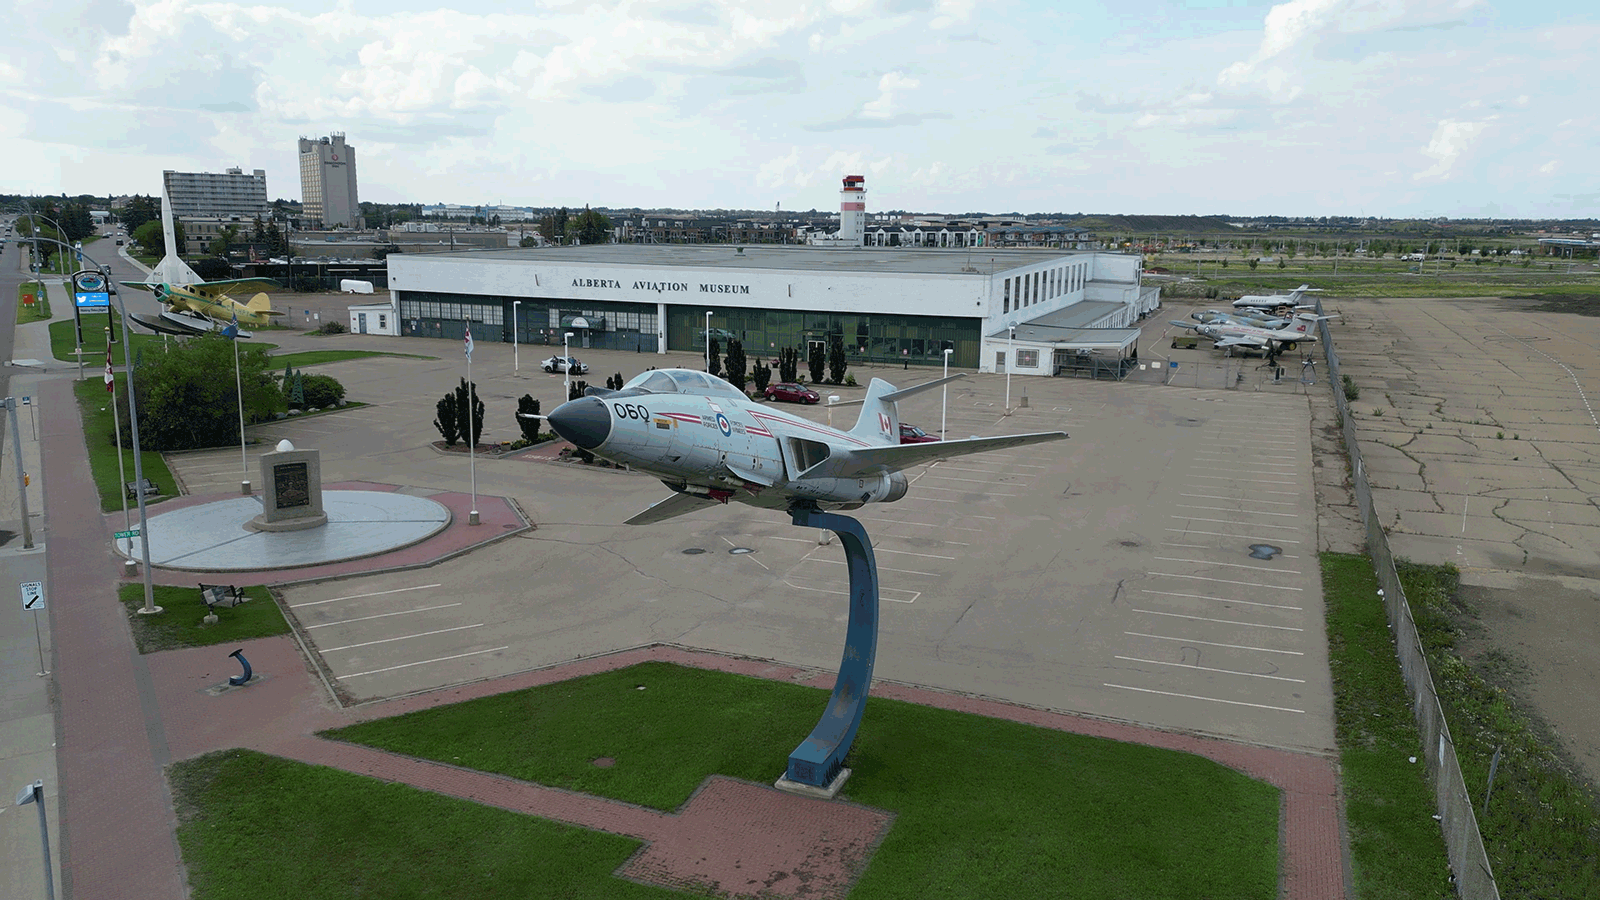 Exterior of the Alberta Aviation Museum